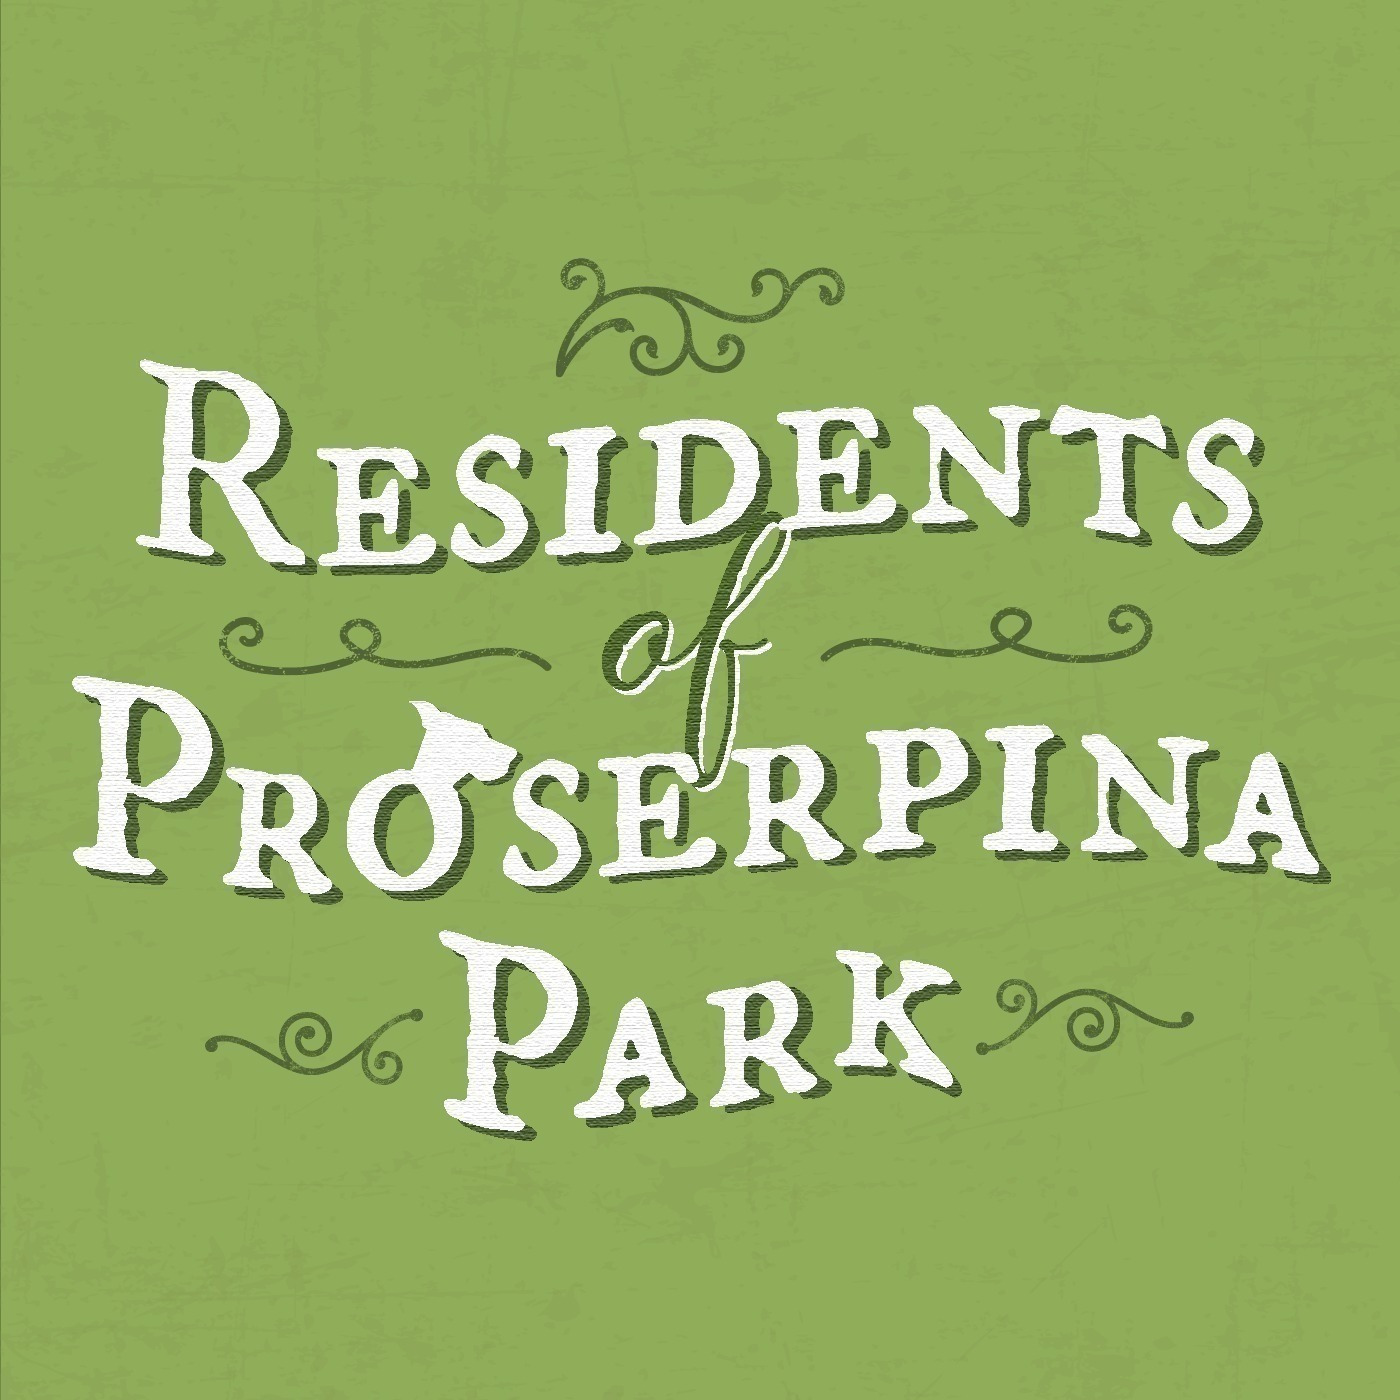 Residents of Proserpina Park - A Mythology Audio Drama podcast show image